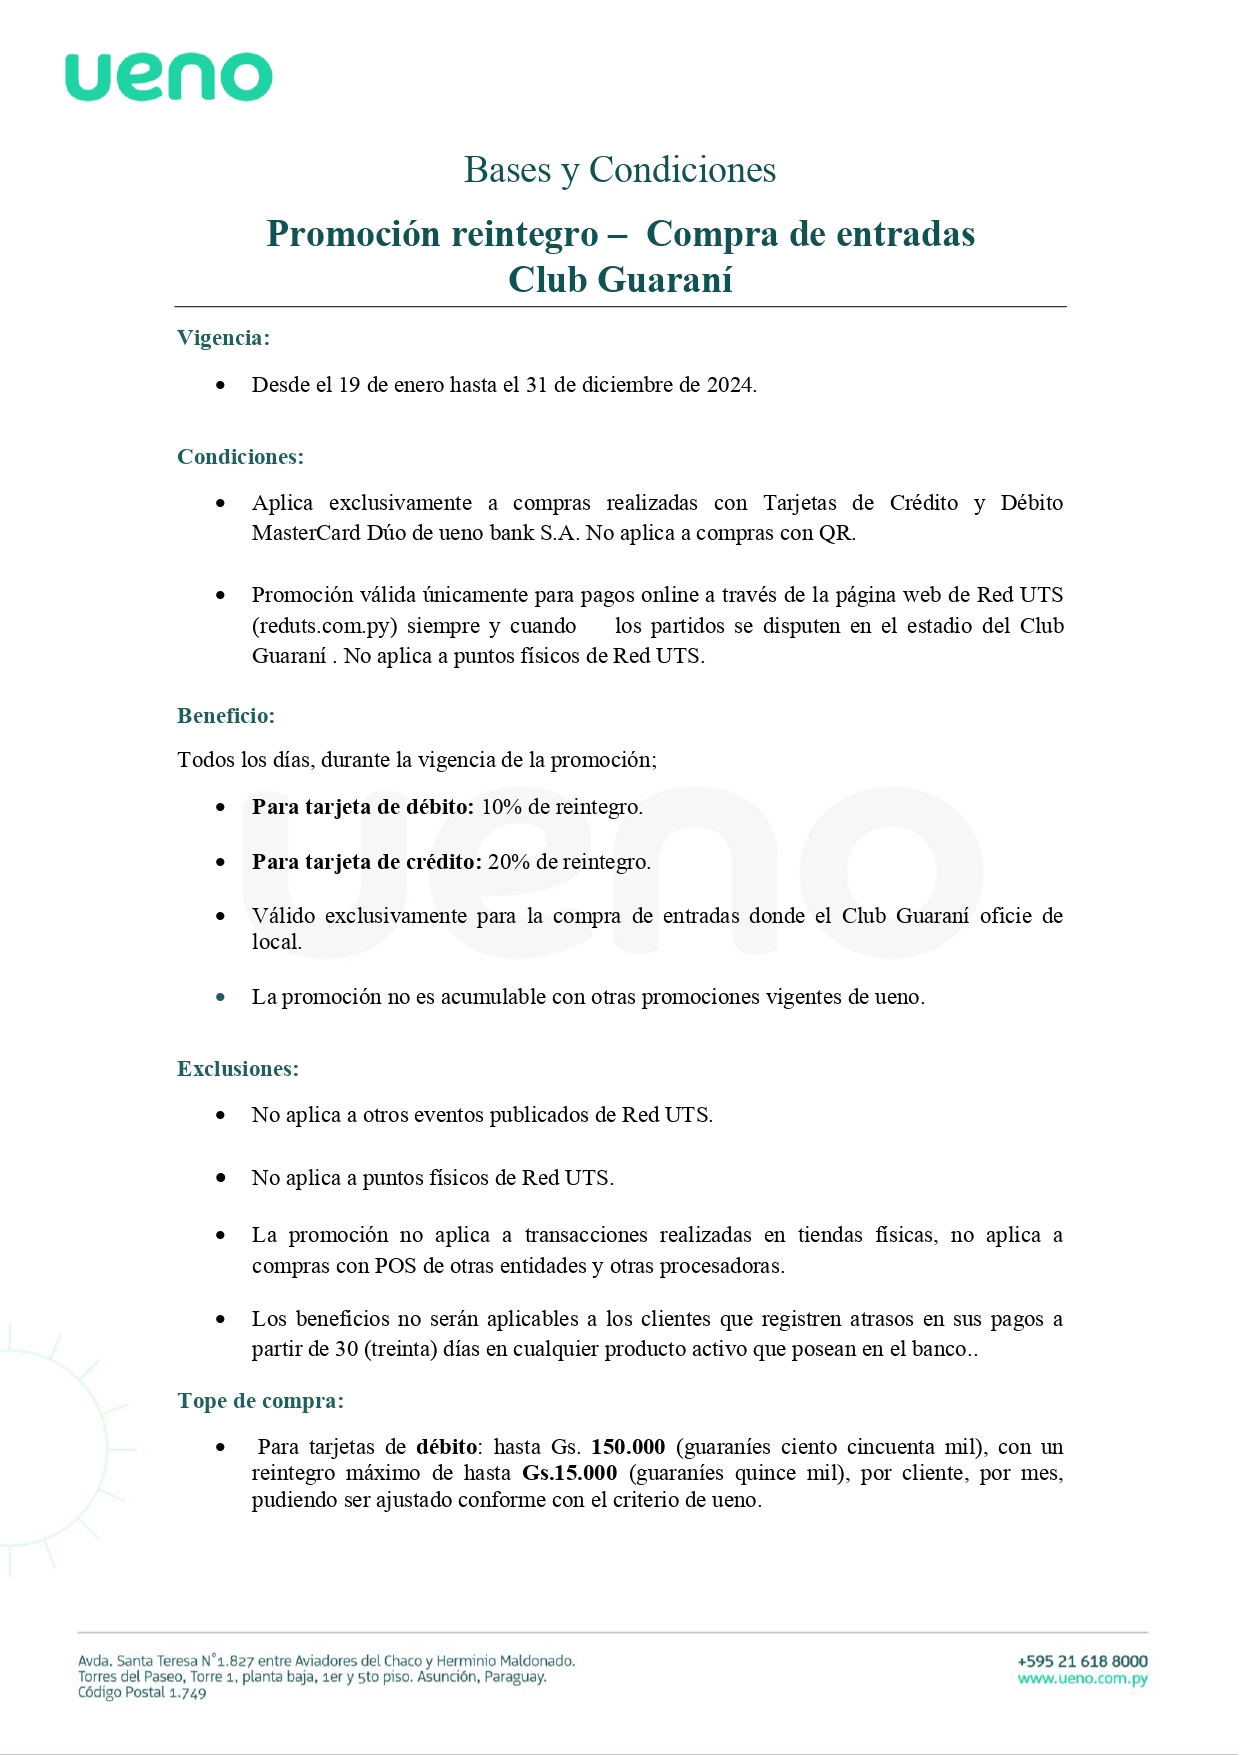 ByC - Promo Compra de entradas Guarani (1)_page-0001.jpg